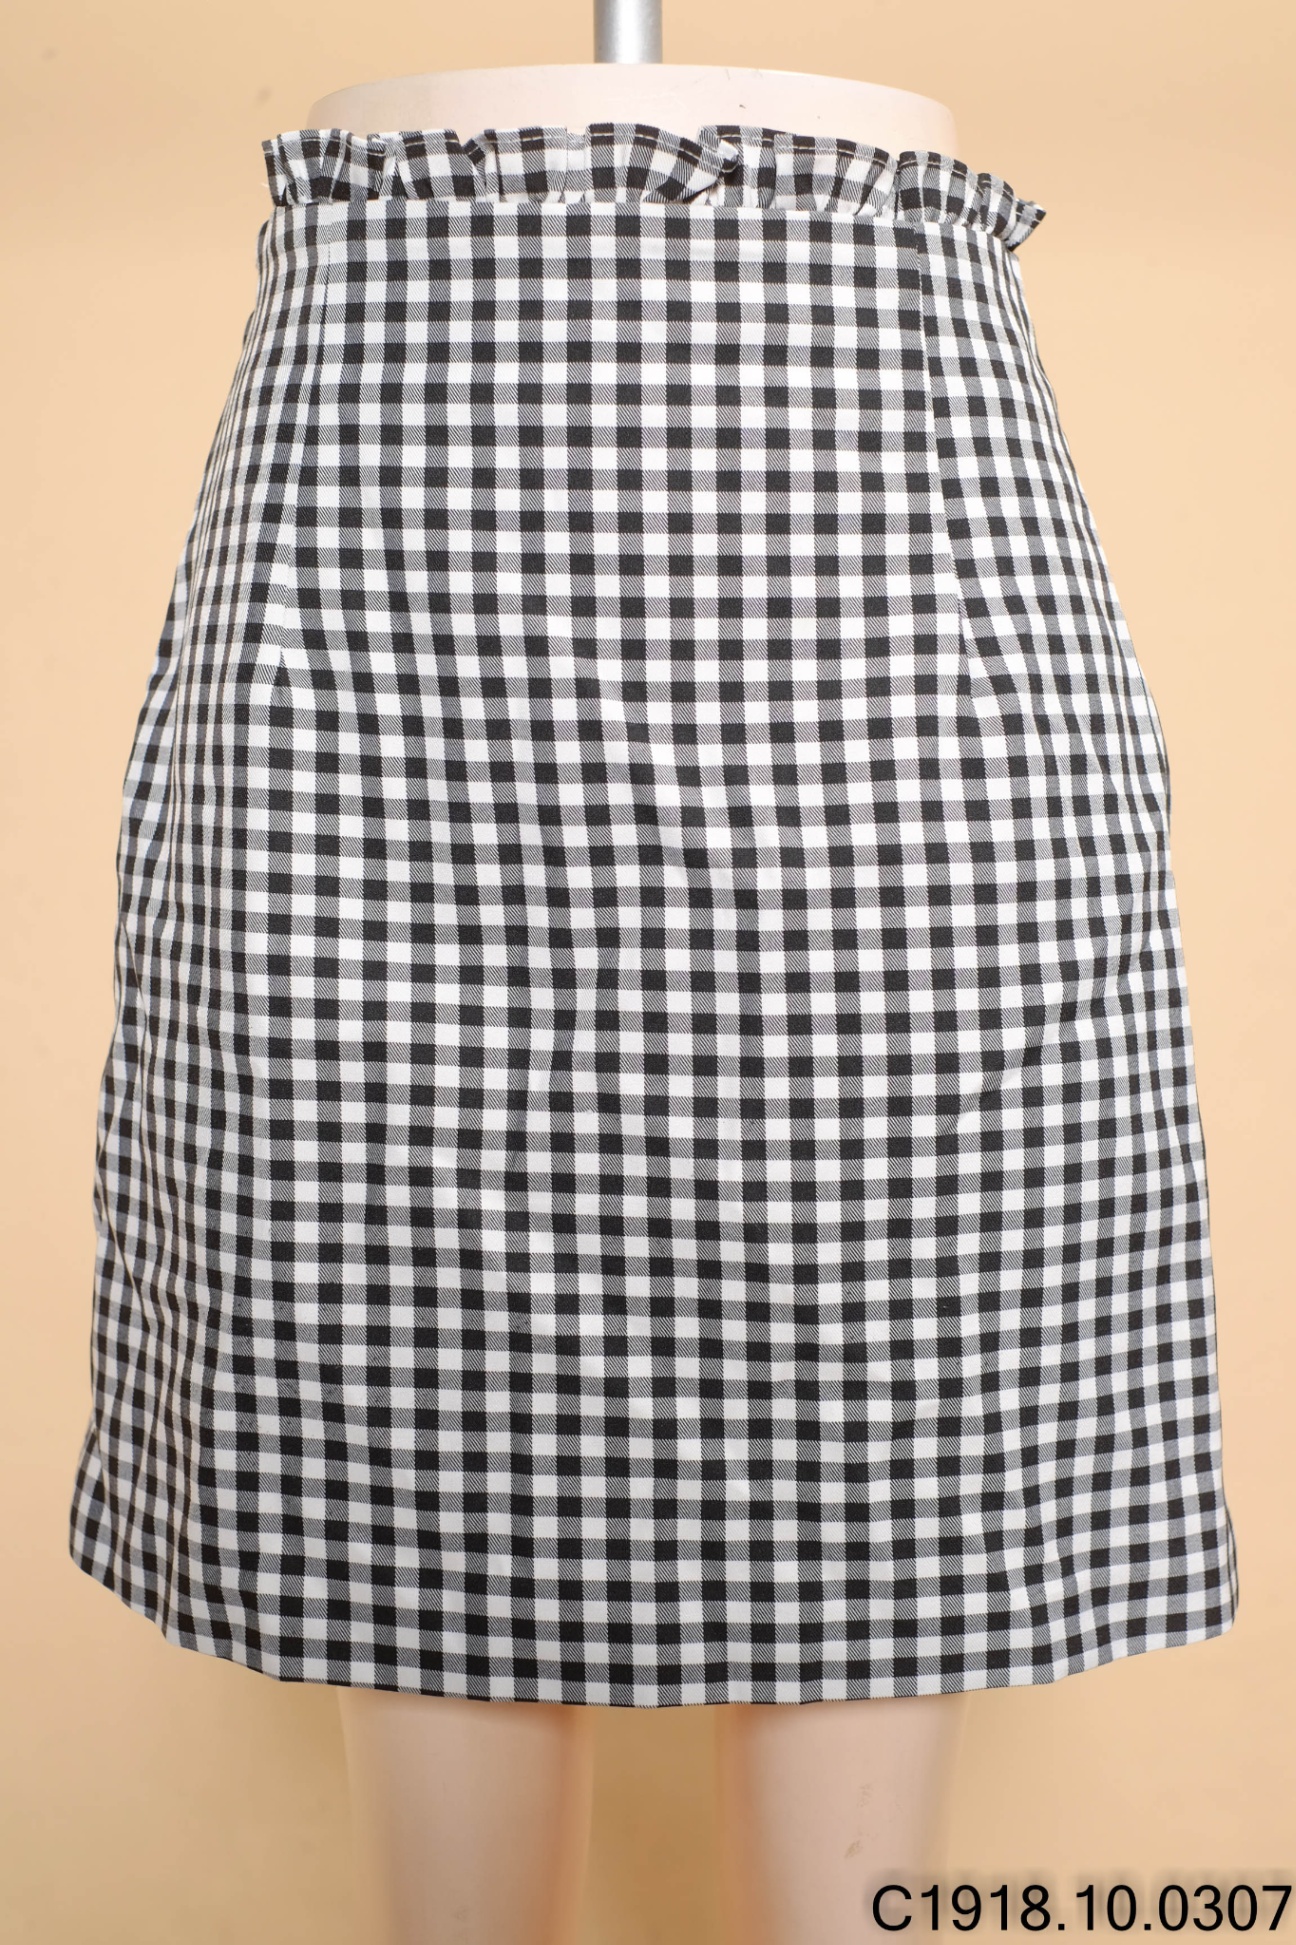 Chân Váy Dạ Dài Kẻ Sọc Caro Midi Caro Skirt Tôn Dáng Đứng Phong Cách Retro  Hàn Quốc | Shopee Việt Nam